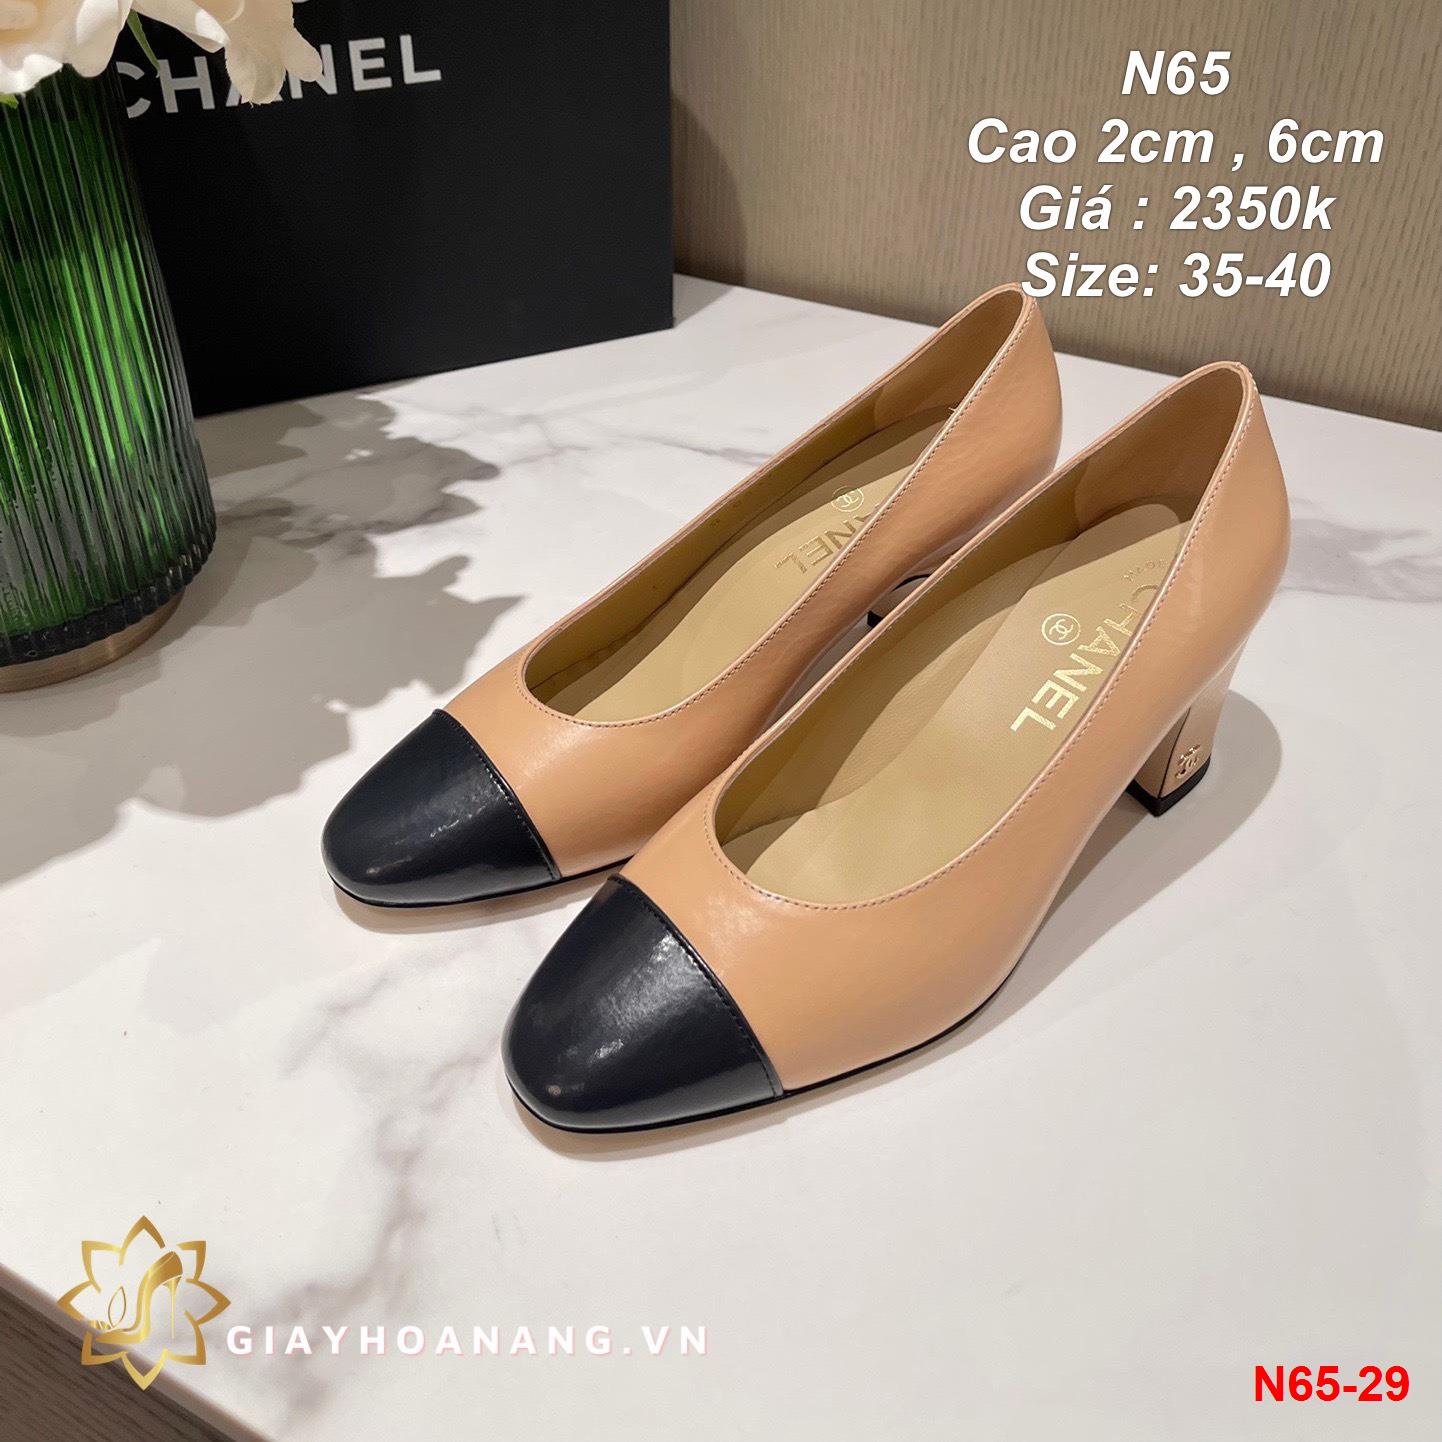 N65-29 Chanel giày cao 2cm , 6cm siêu cấp